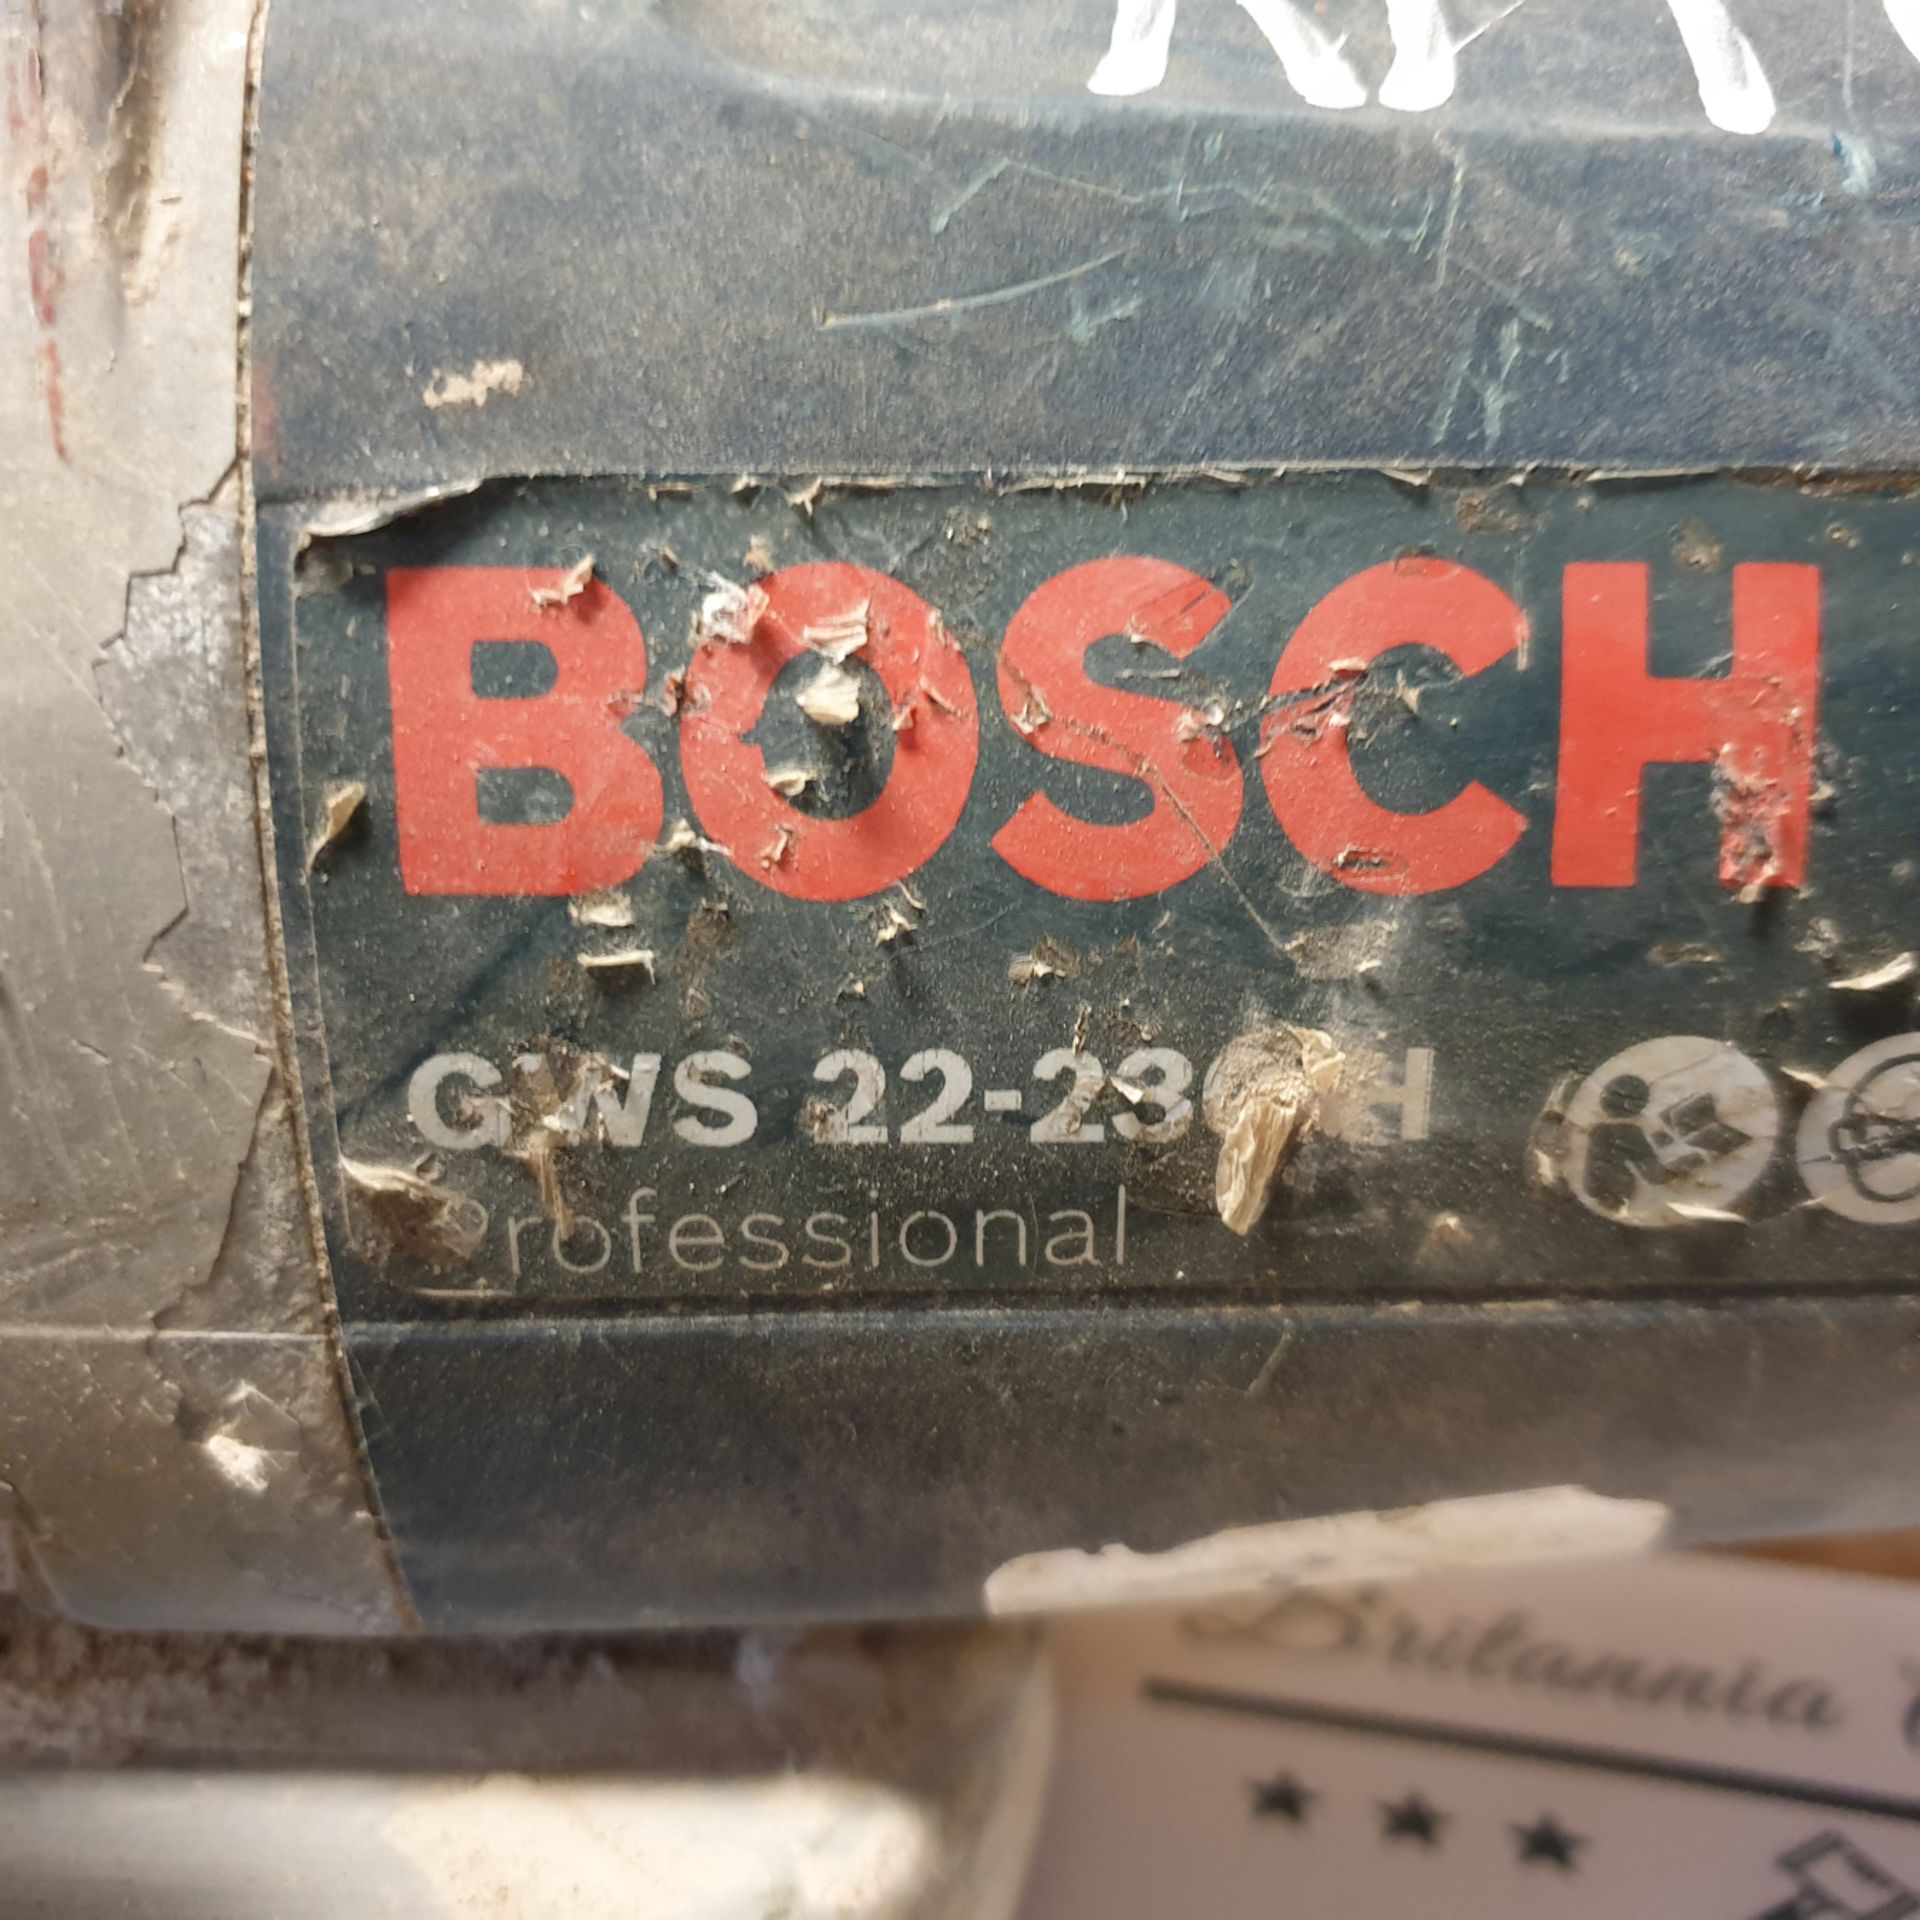 BOSCH GWS 110V Angle Grinder. - Image 3 of 3